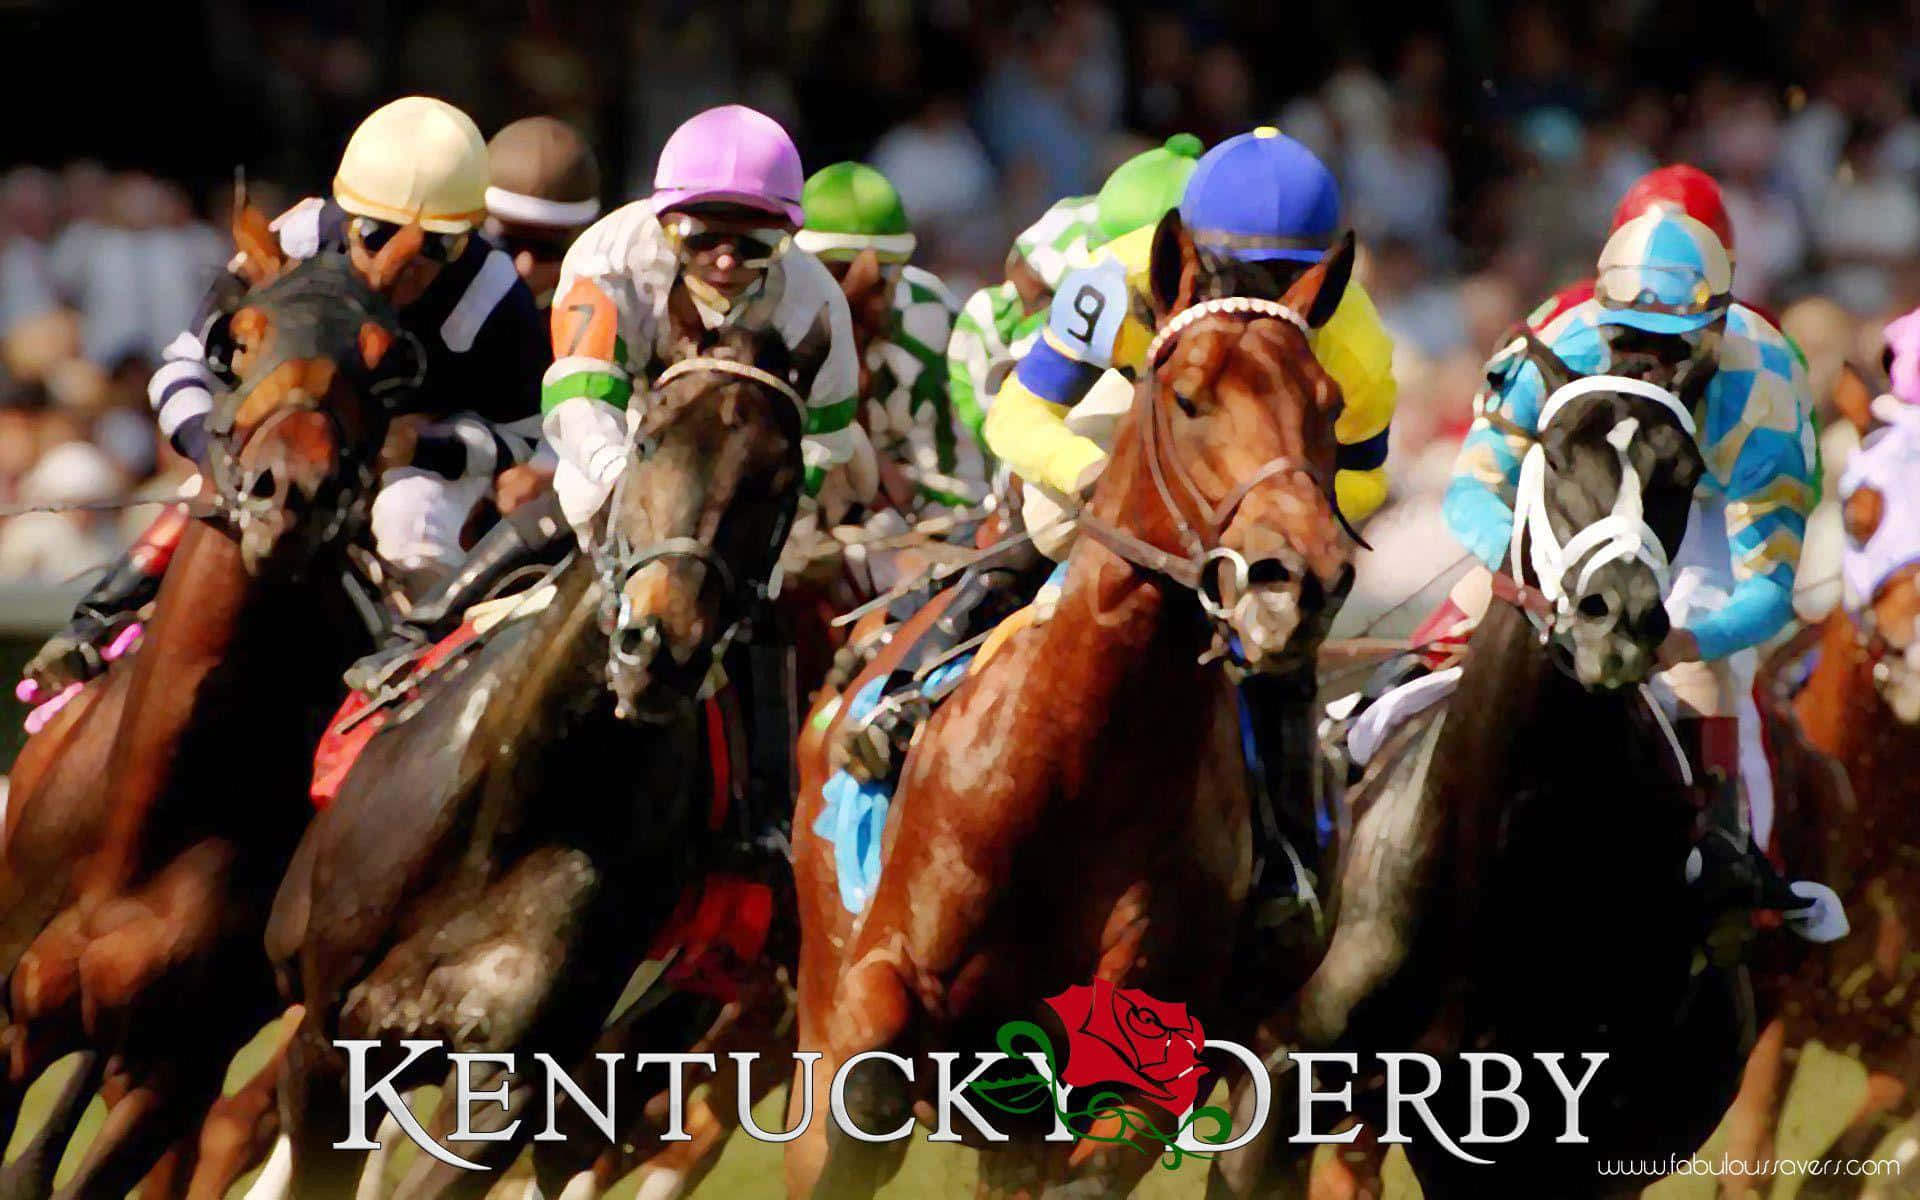 Kentucky Derby Race Results